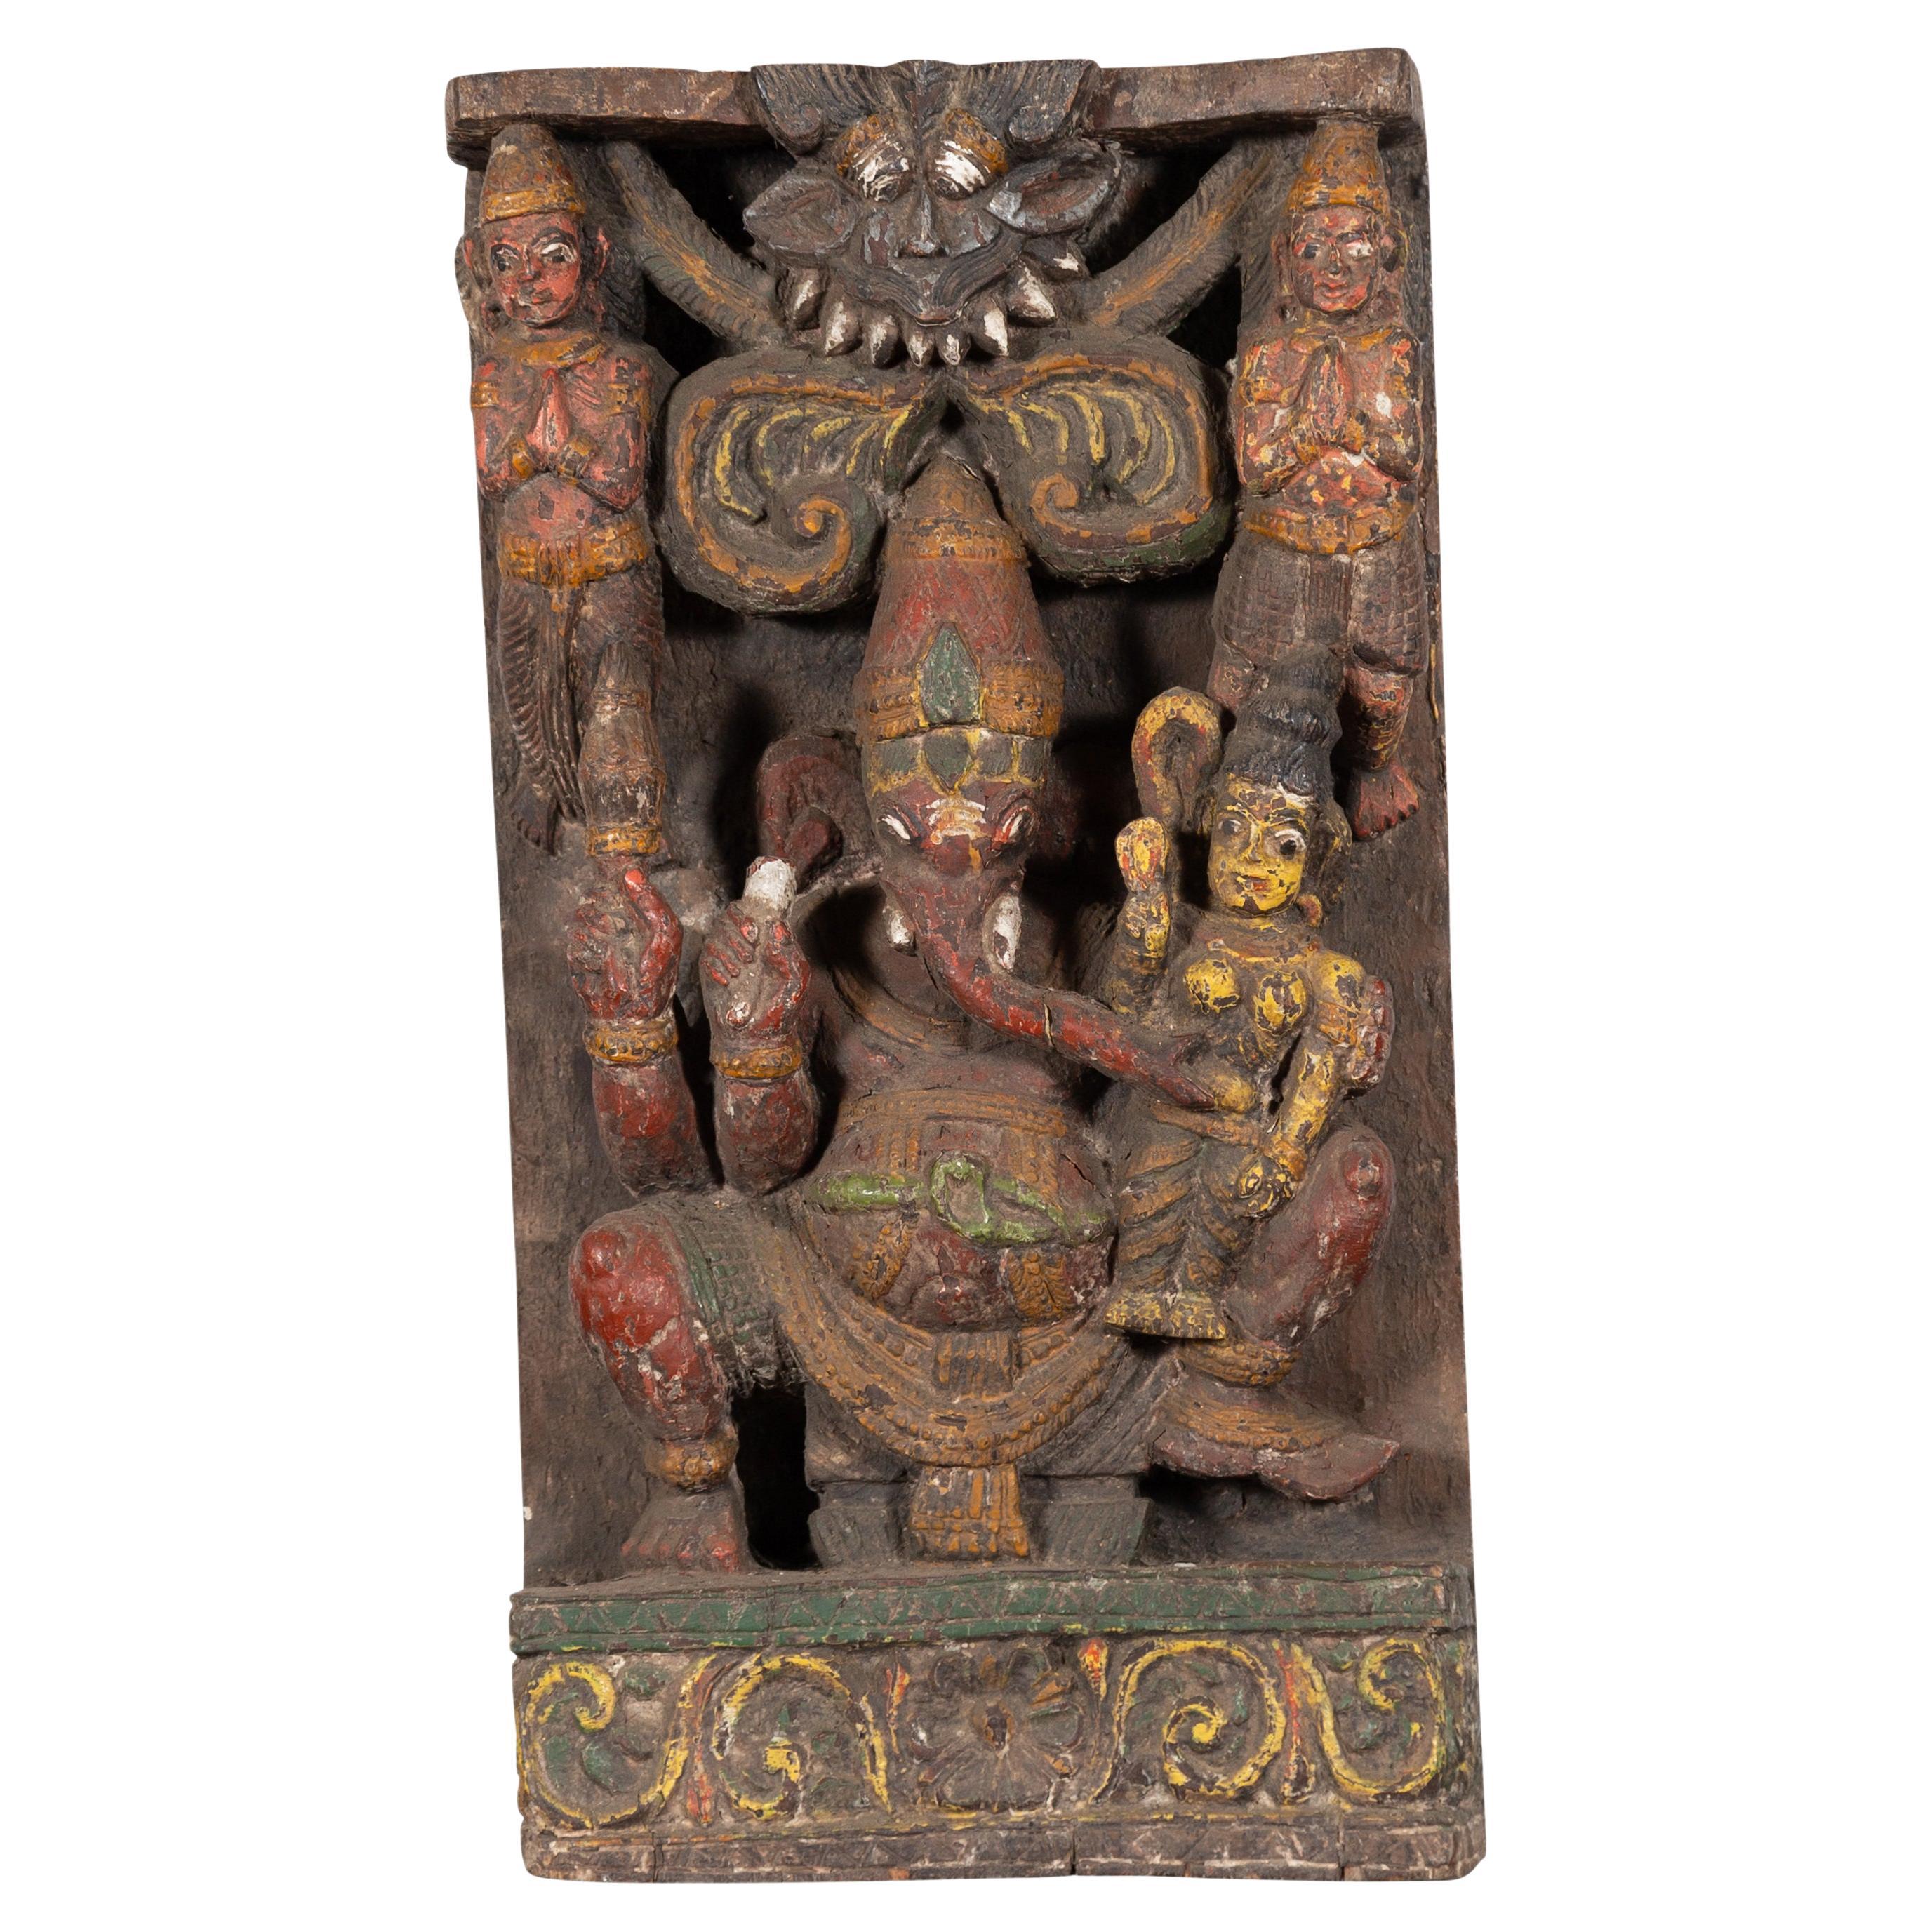 Sculpture de temple indienne multicolore du 19ème siècle représentant Ganesh avec consort